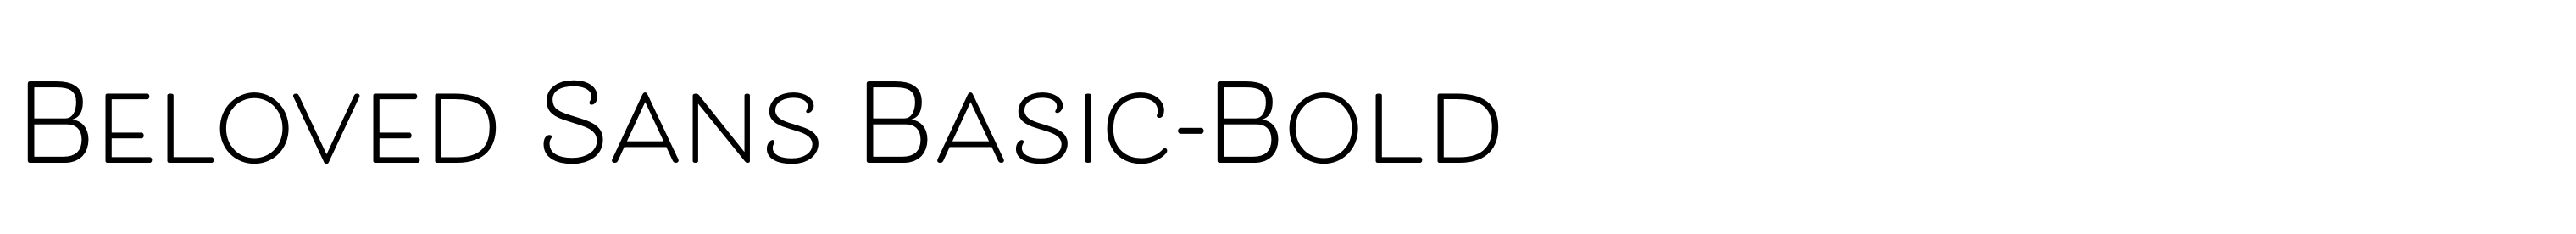 Beloved Sans Basic-Bold